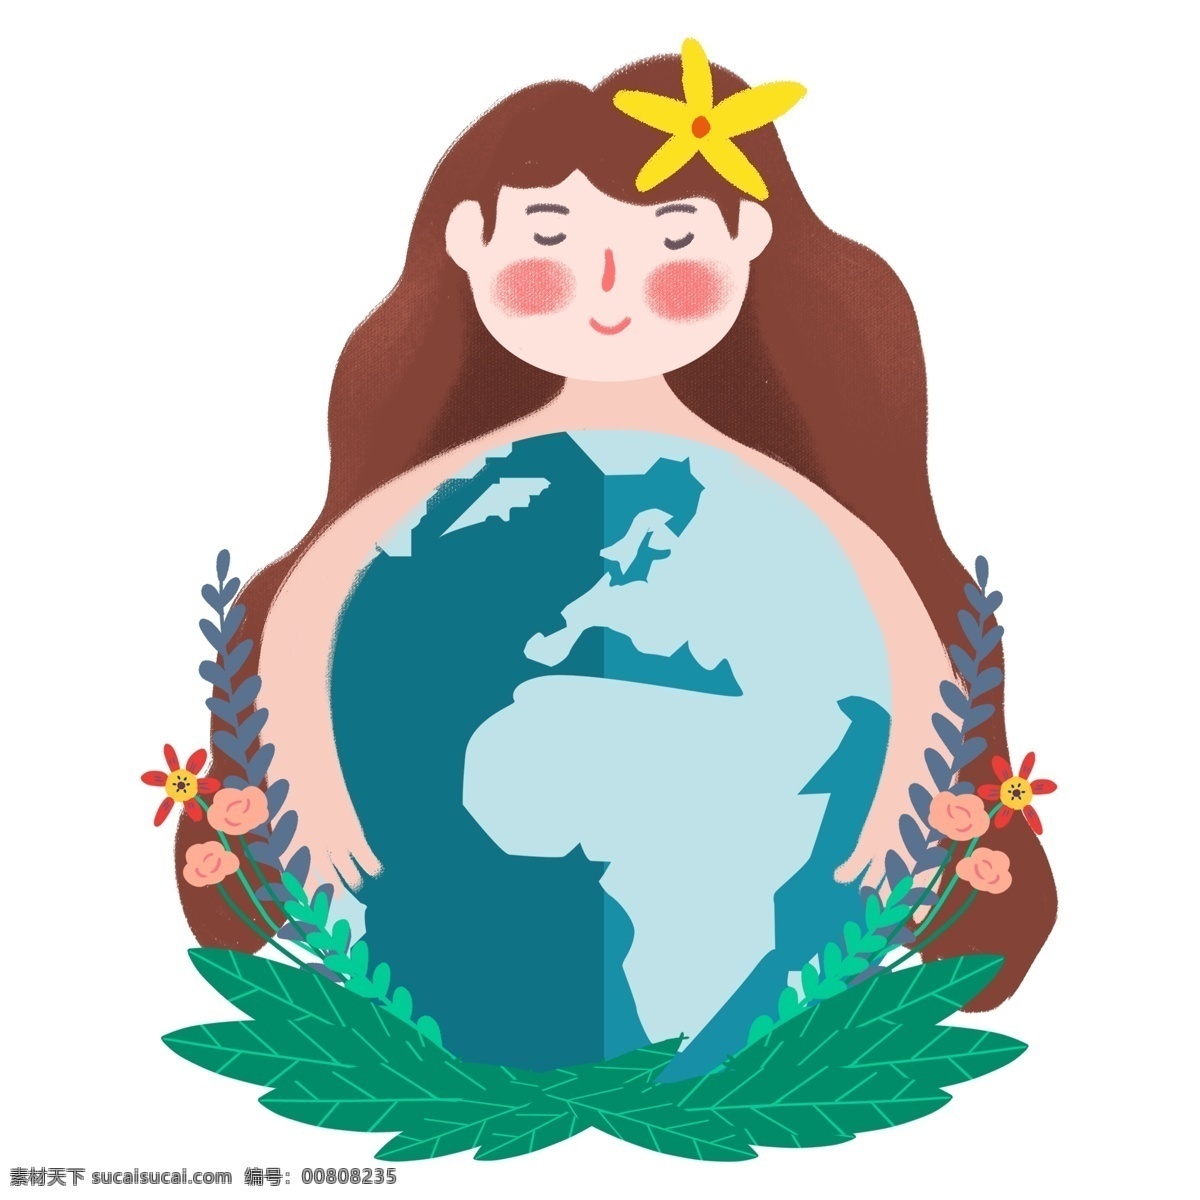 世界 地球日 拥抱 地球 女孩 免 抠 图 世界地球日 绿草 花朵 热爱环境 暖 系 小 清新 风格 广告 海报